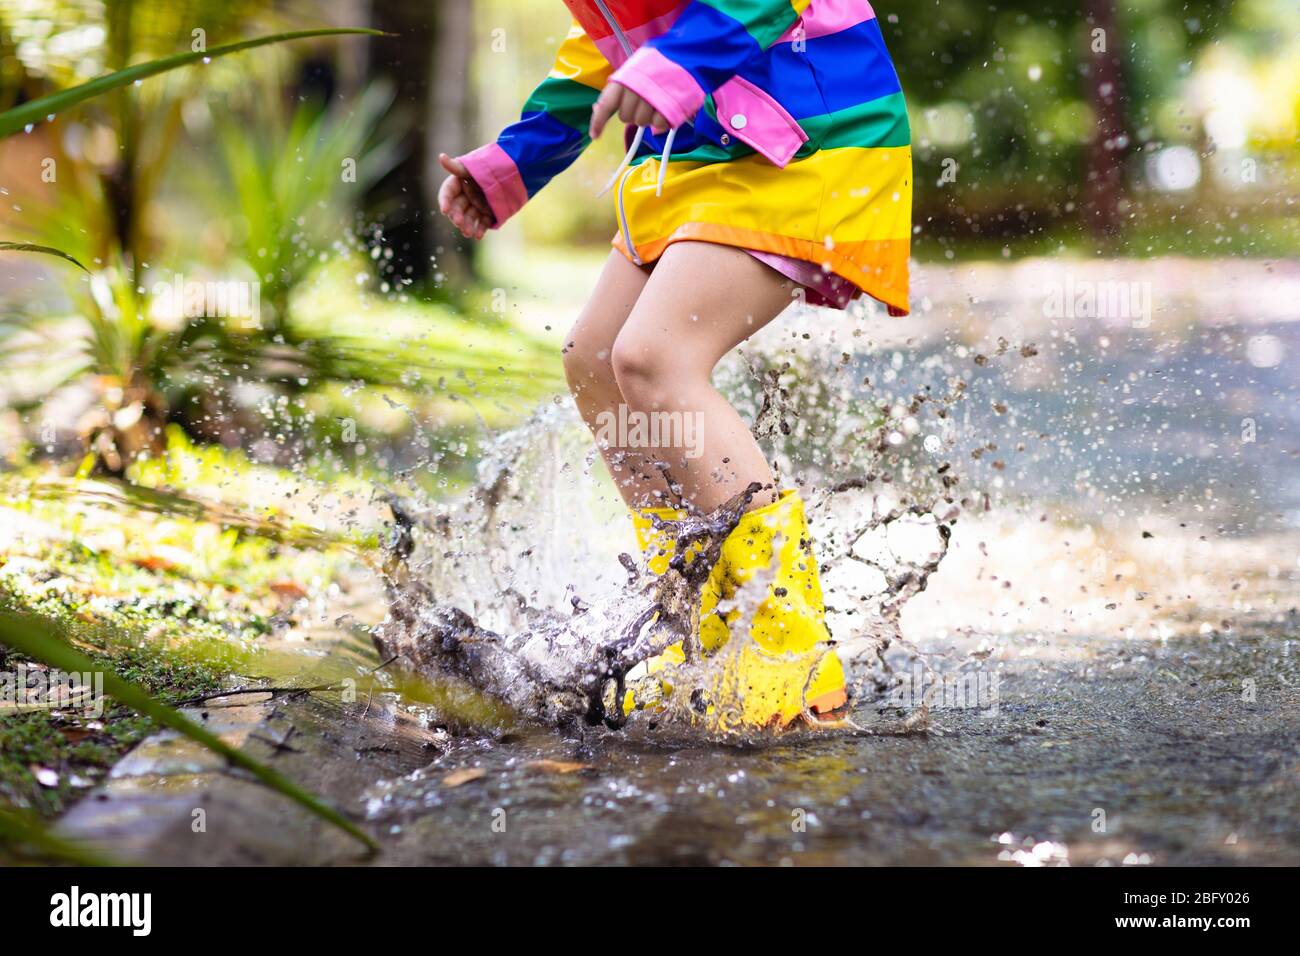 Kind spielt im Regen im Herbstpark. Kind springt in schlammigen Pfütze an regnerischen Herbsttag. Kleines Mädchen in Regenstiefeln und Regenbogenjacke im Himmel Stockfoto